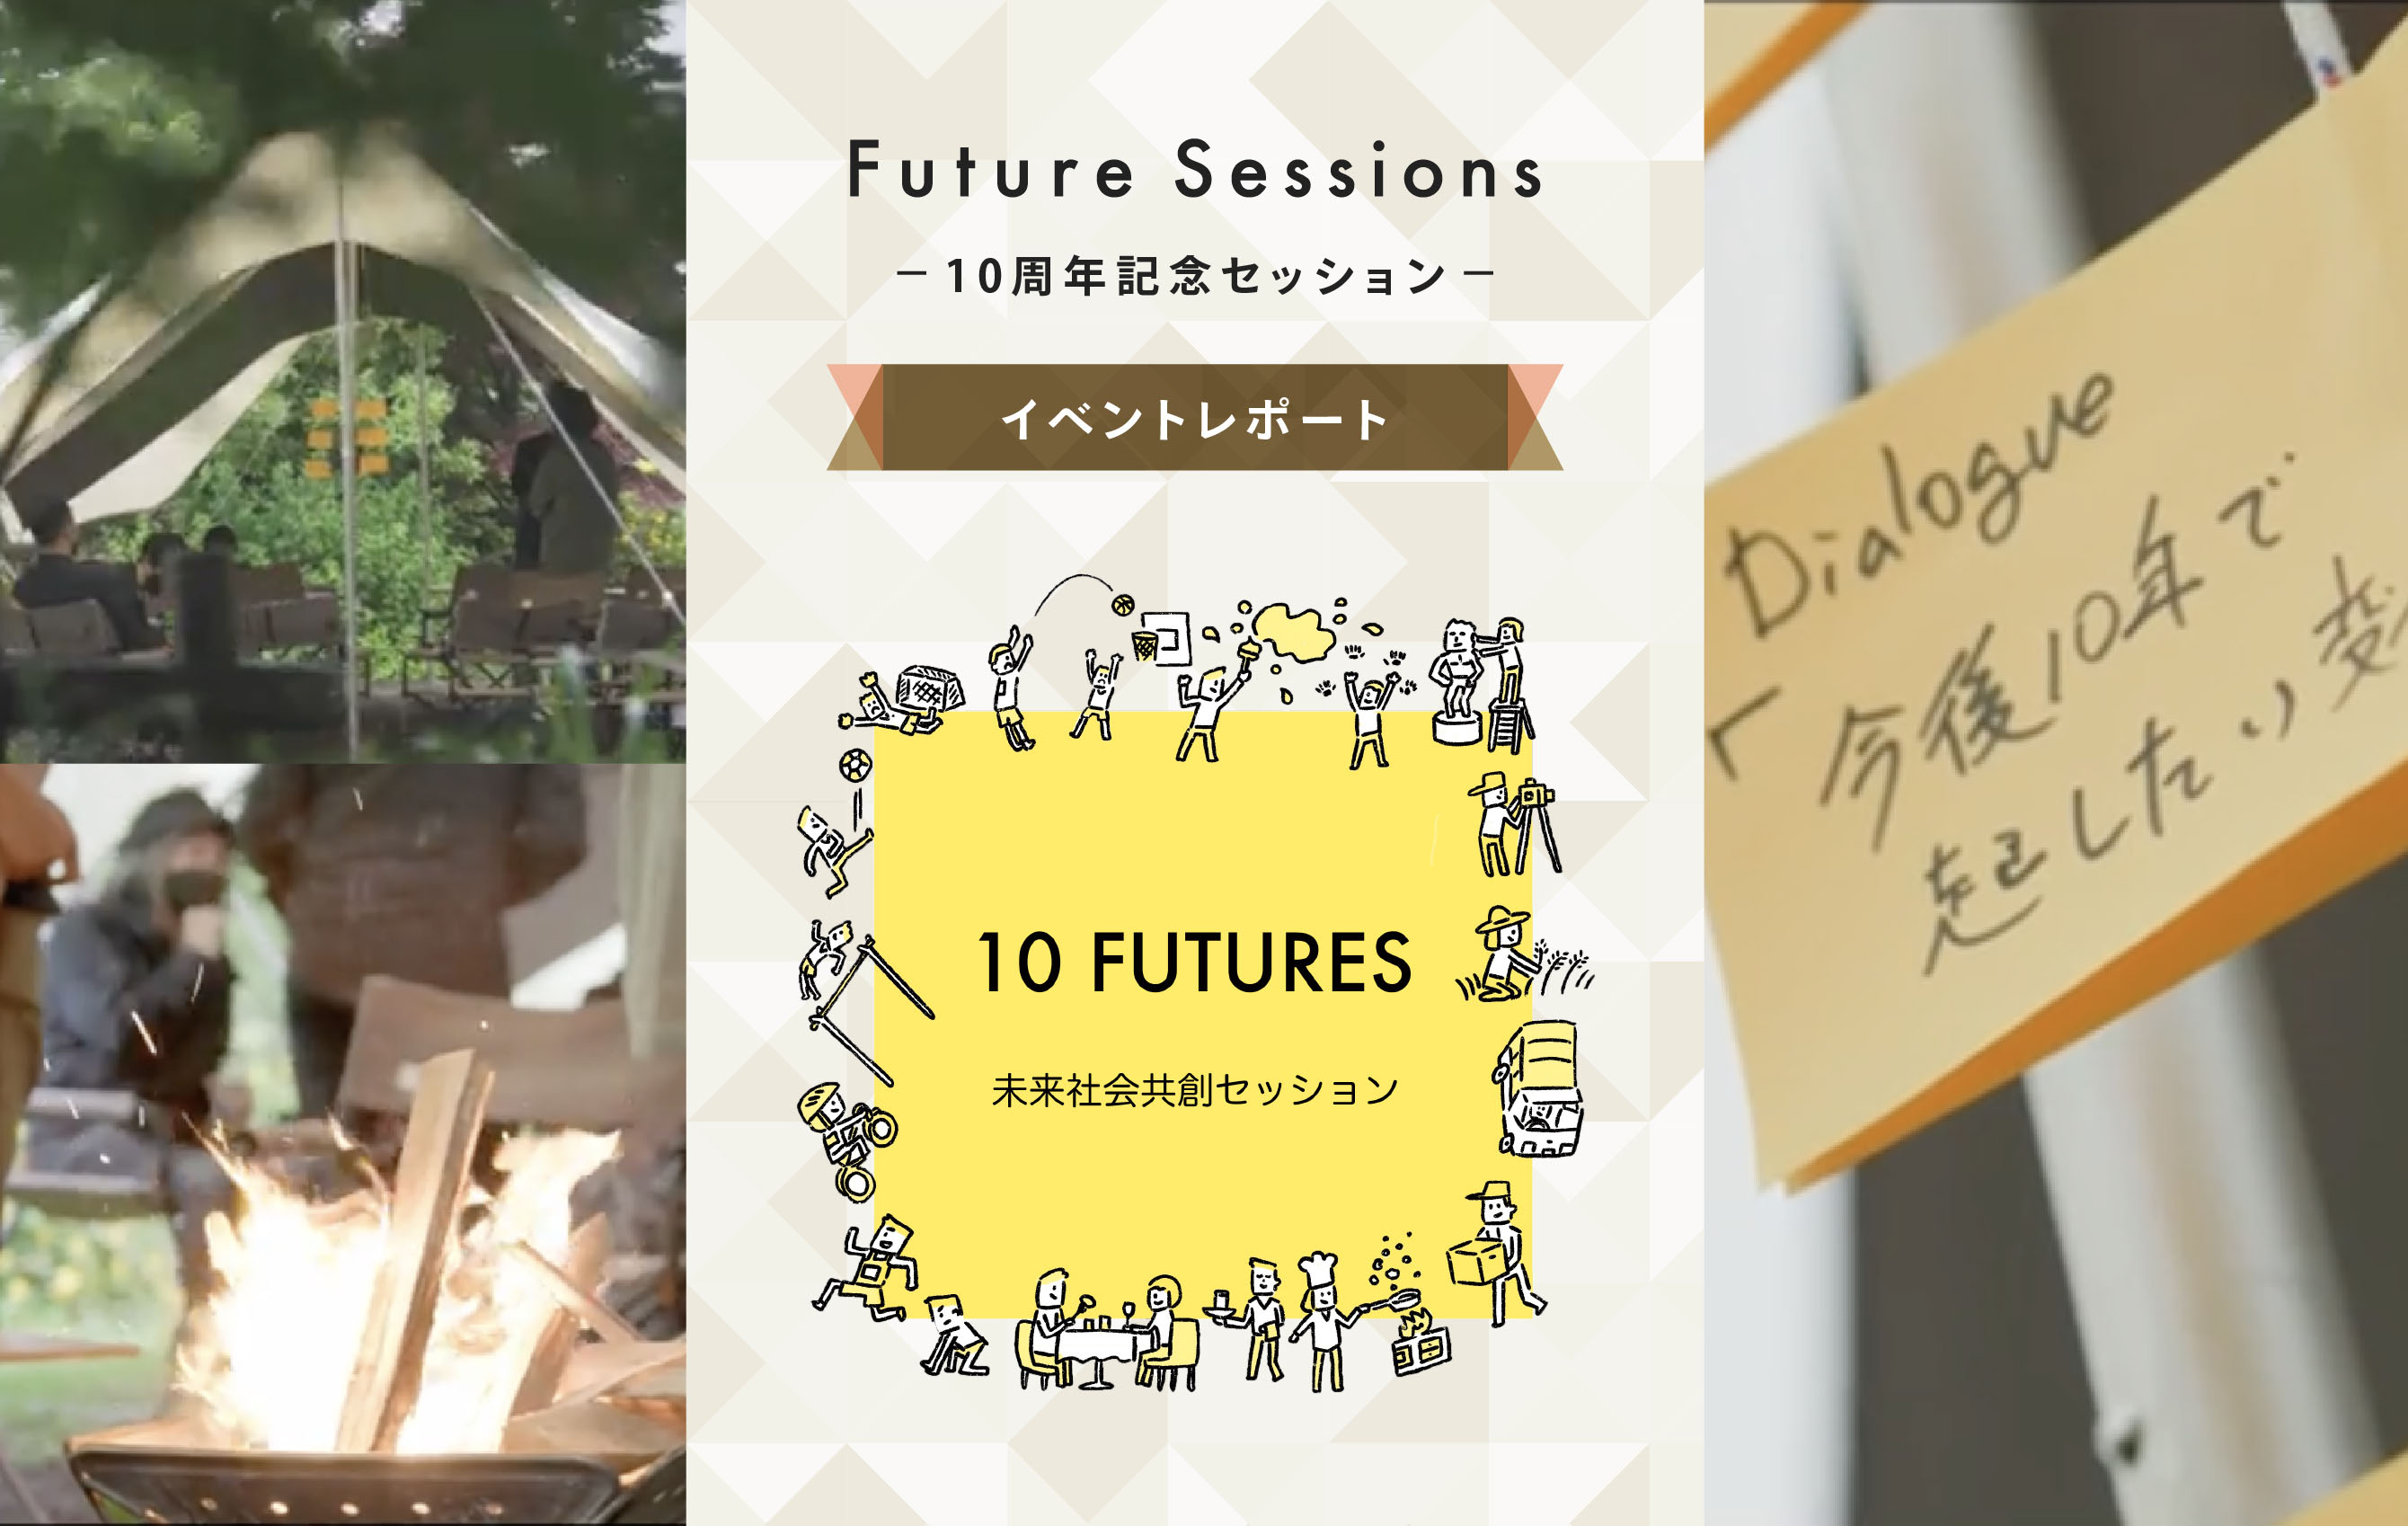 Future Sessions -10周年記念セッション- イベントレポート 10 FUTURES 未来社会共創セッション